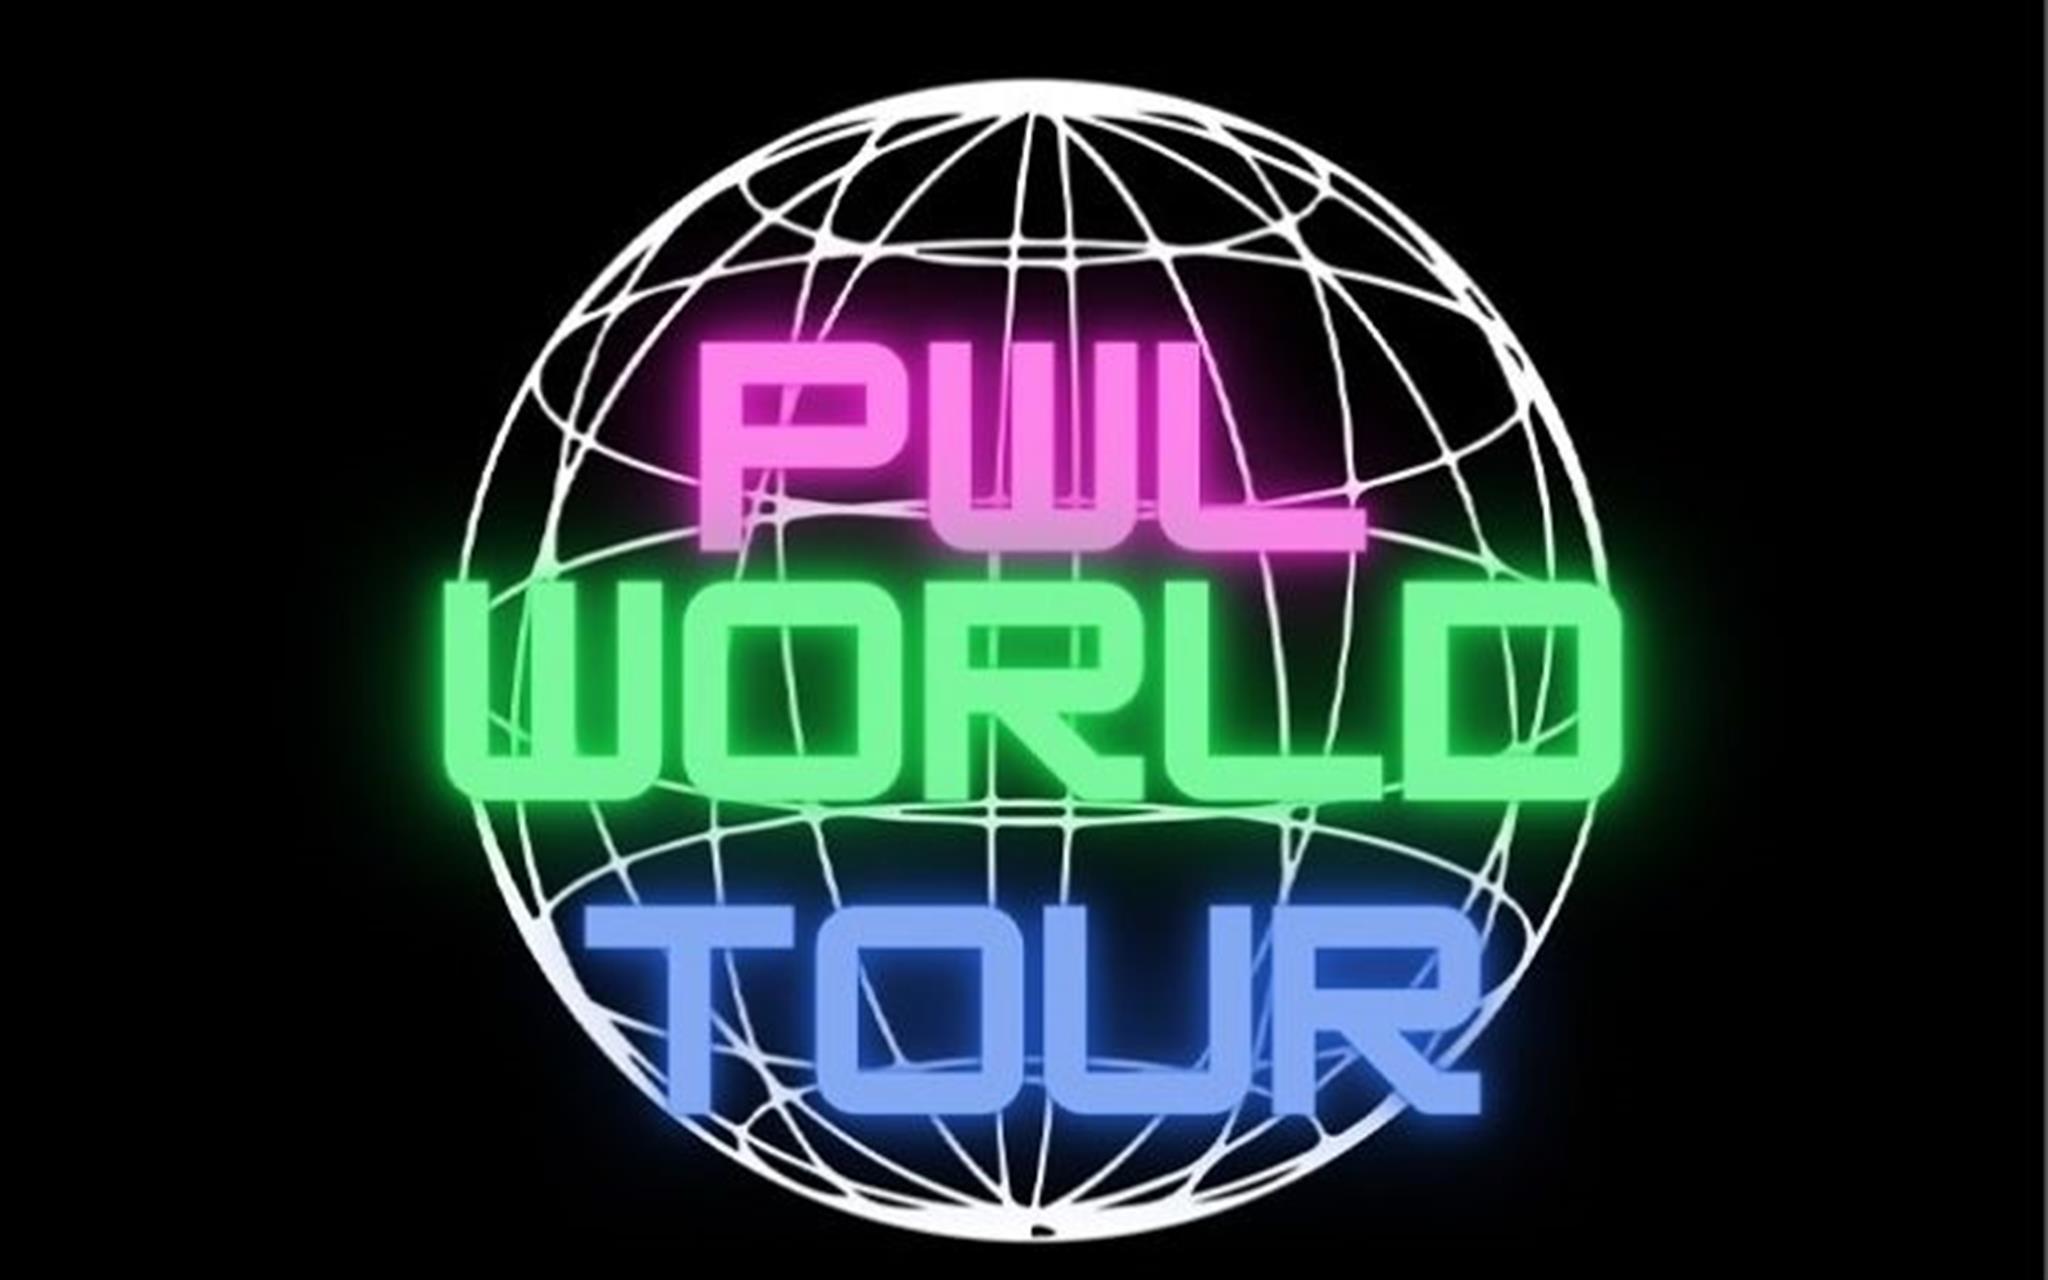 PWL World Tour